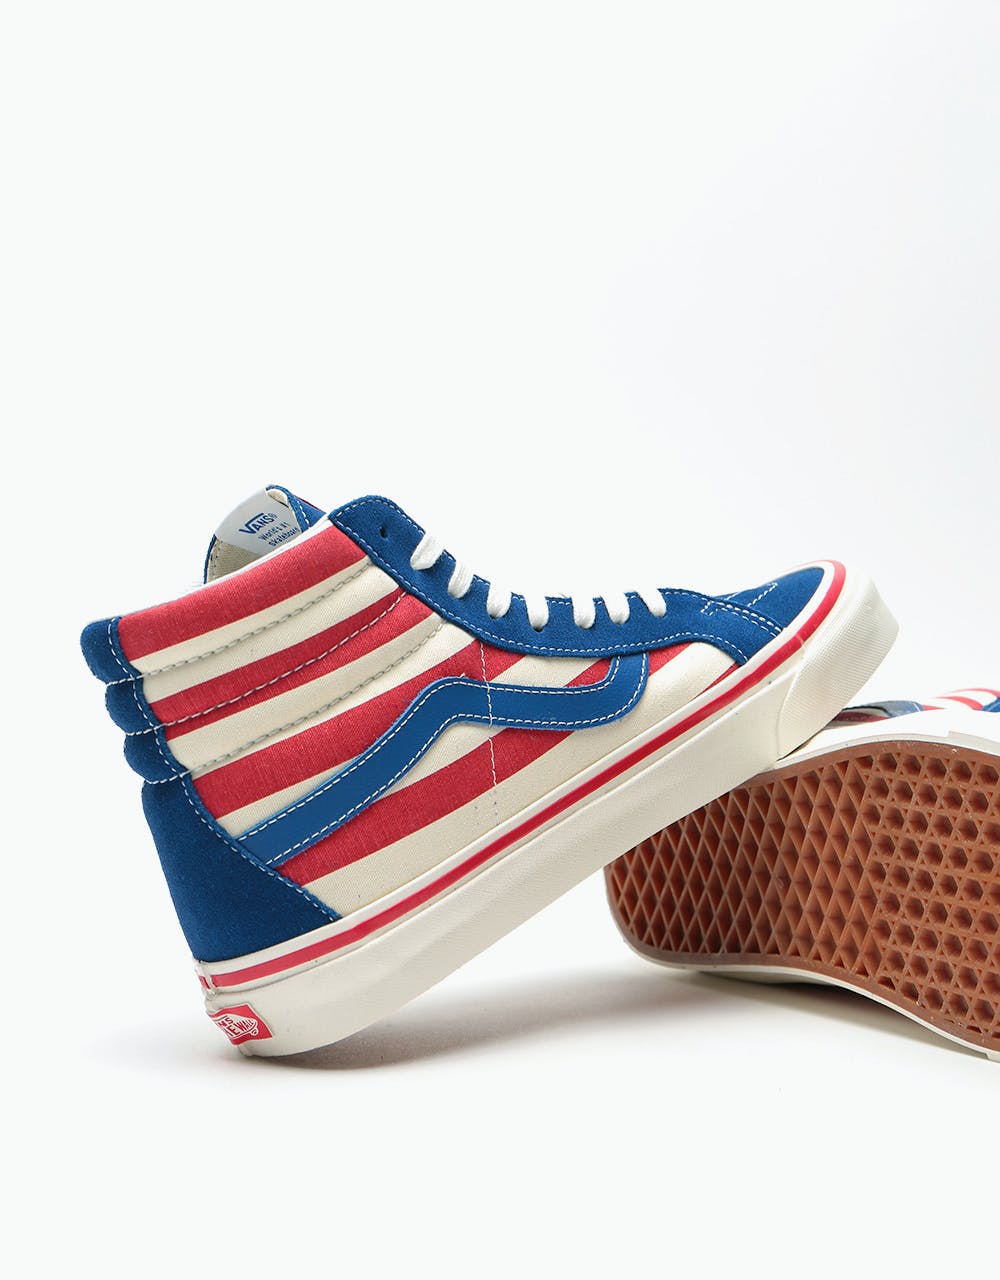 Vans Sk8-Hi 38 DX Skate Shoes - (Anaheim Factory) OG Blue/OG Red Stripes